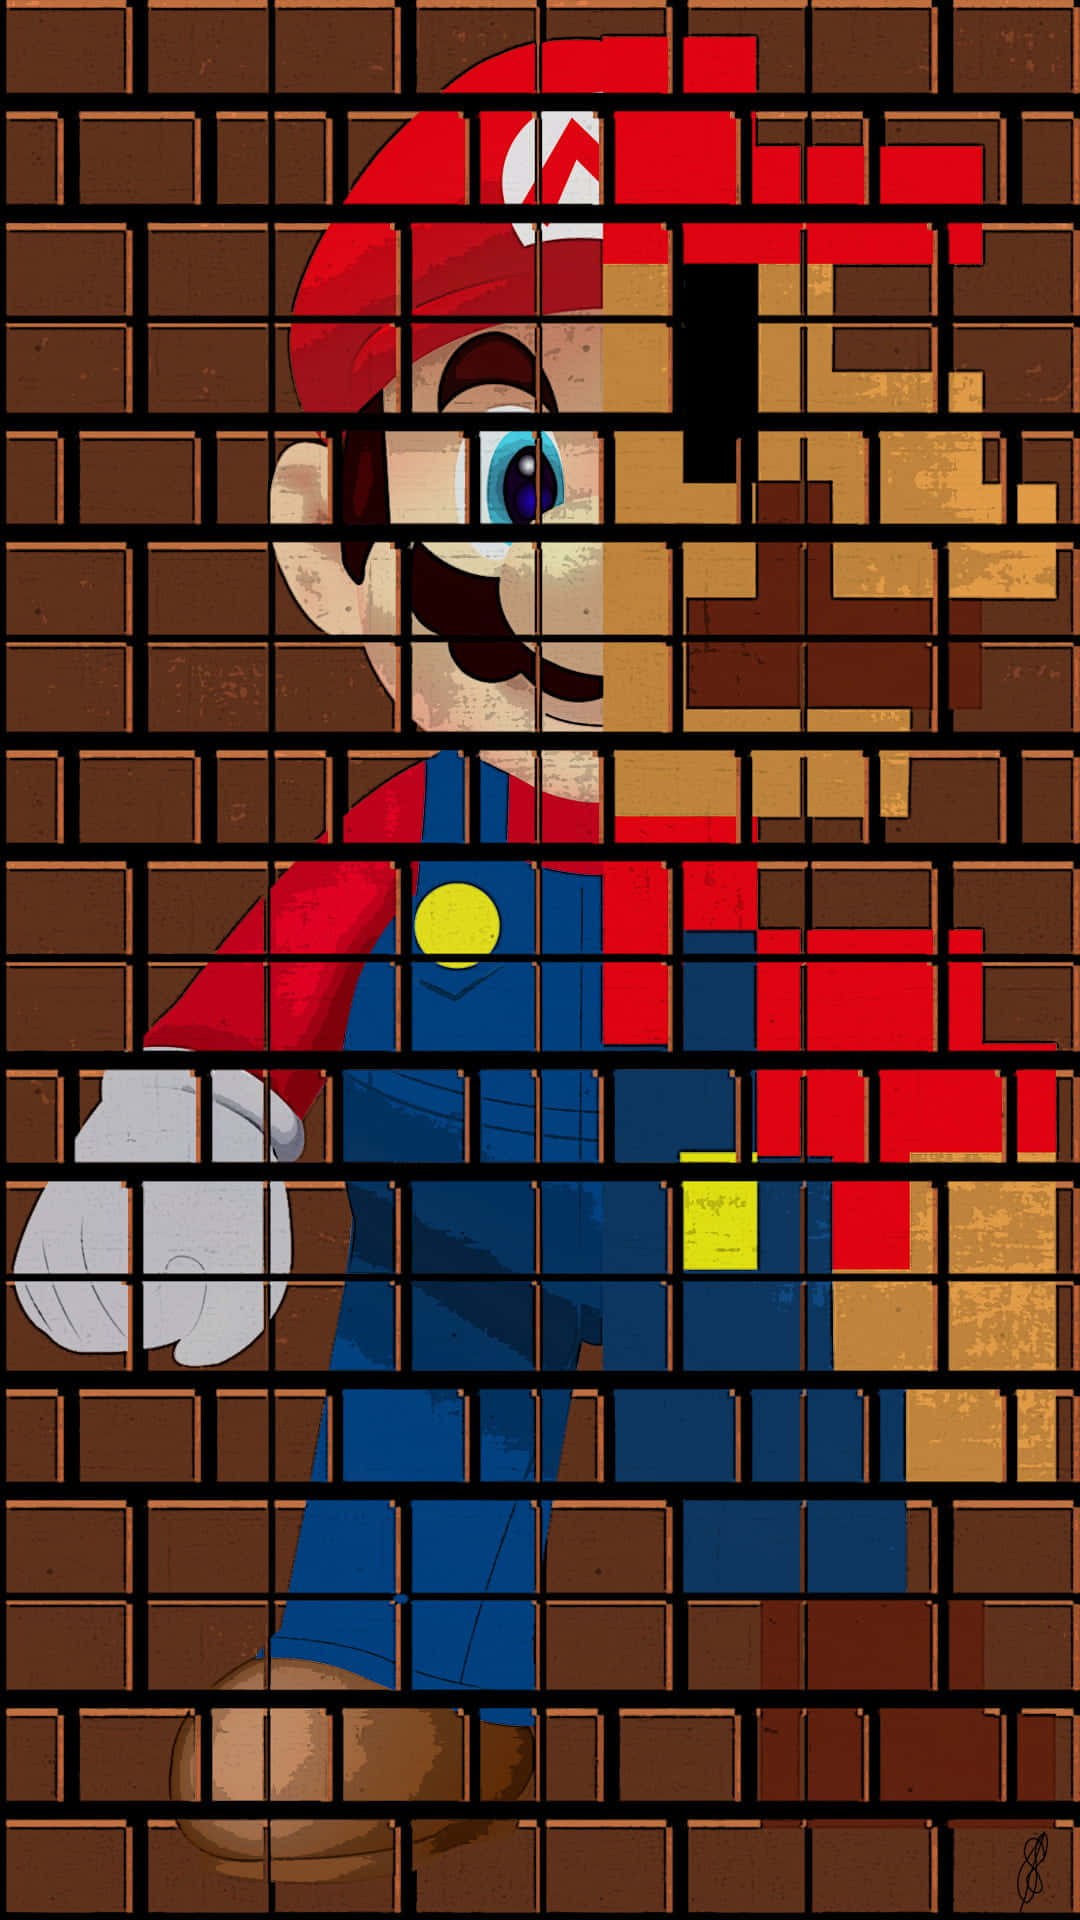 Journey Through Fantastical Worlds In Super Mario.